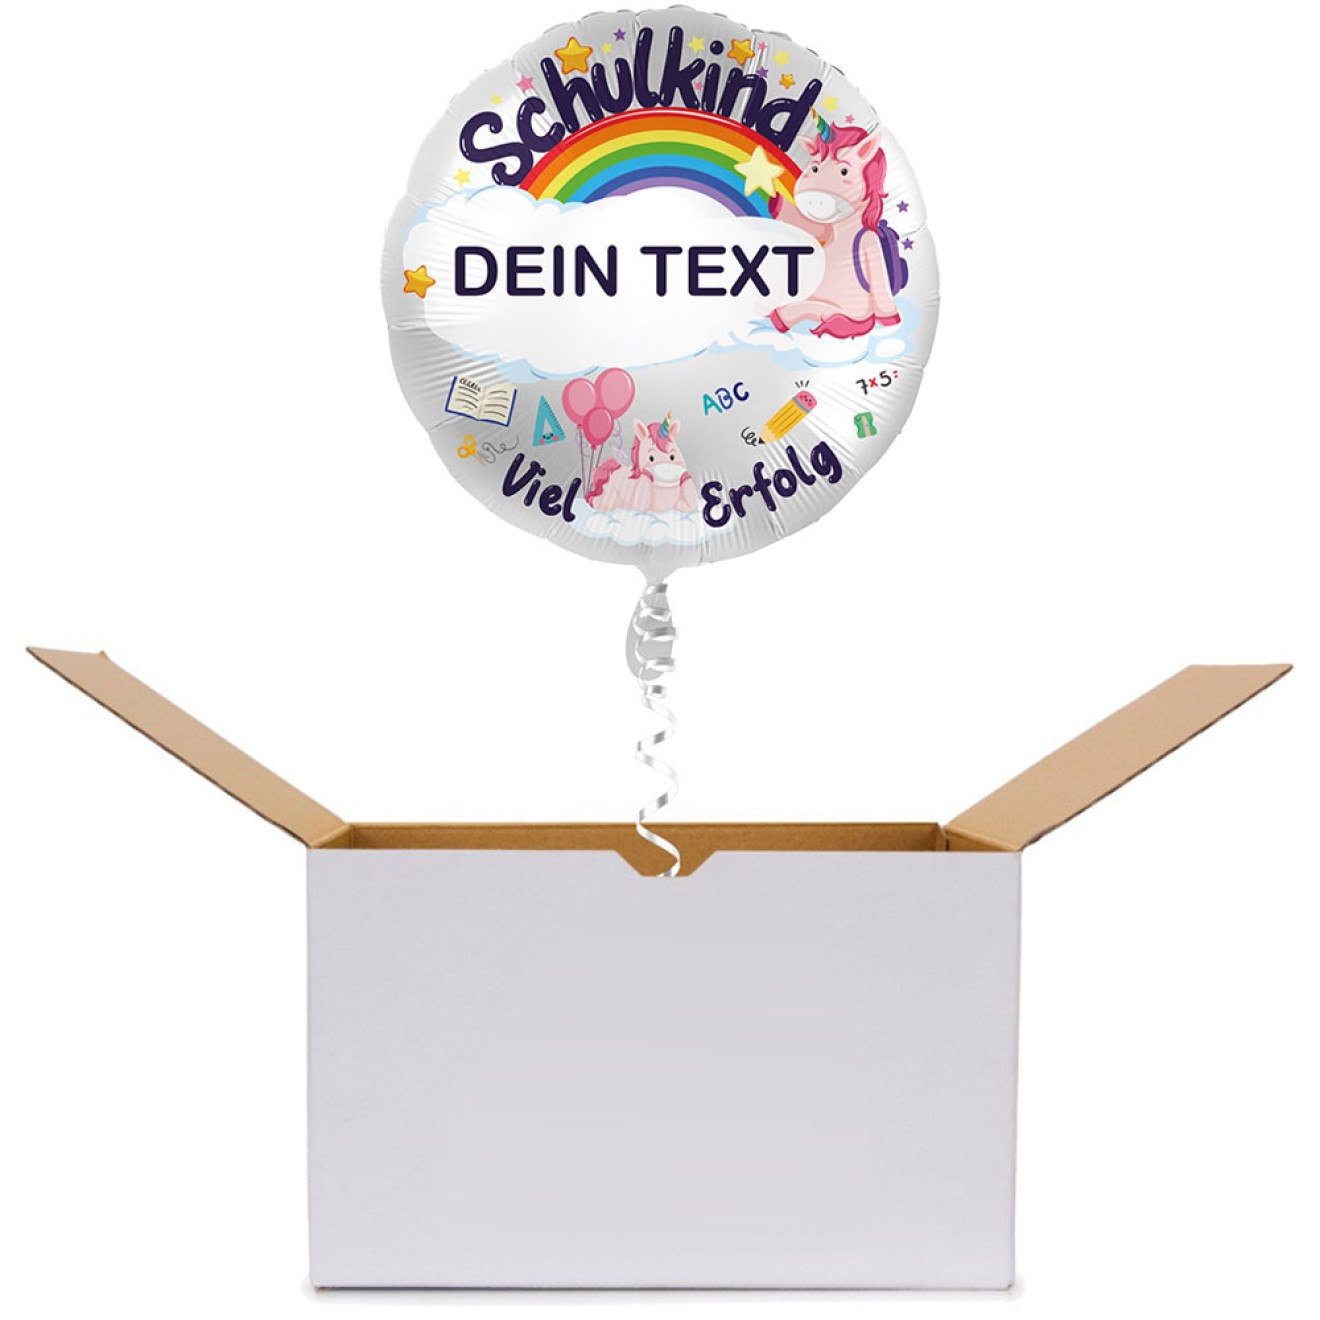 Folienballons Personalisiert - Schulkind Einhorn - Viel Erfolg